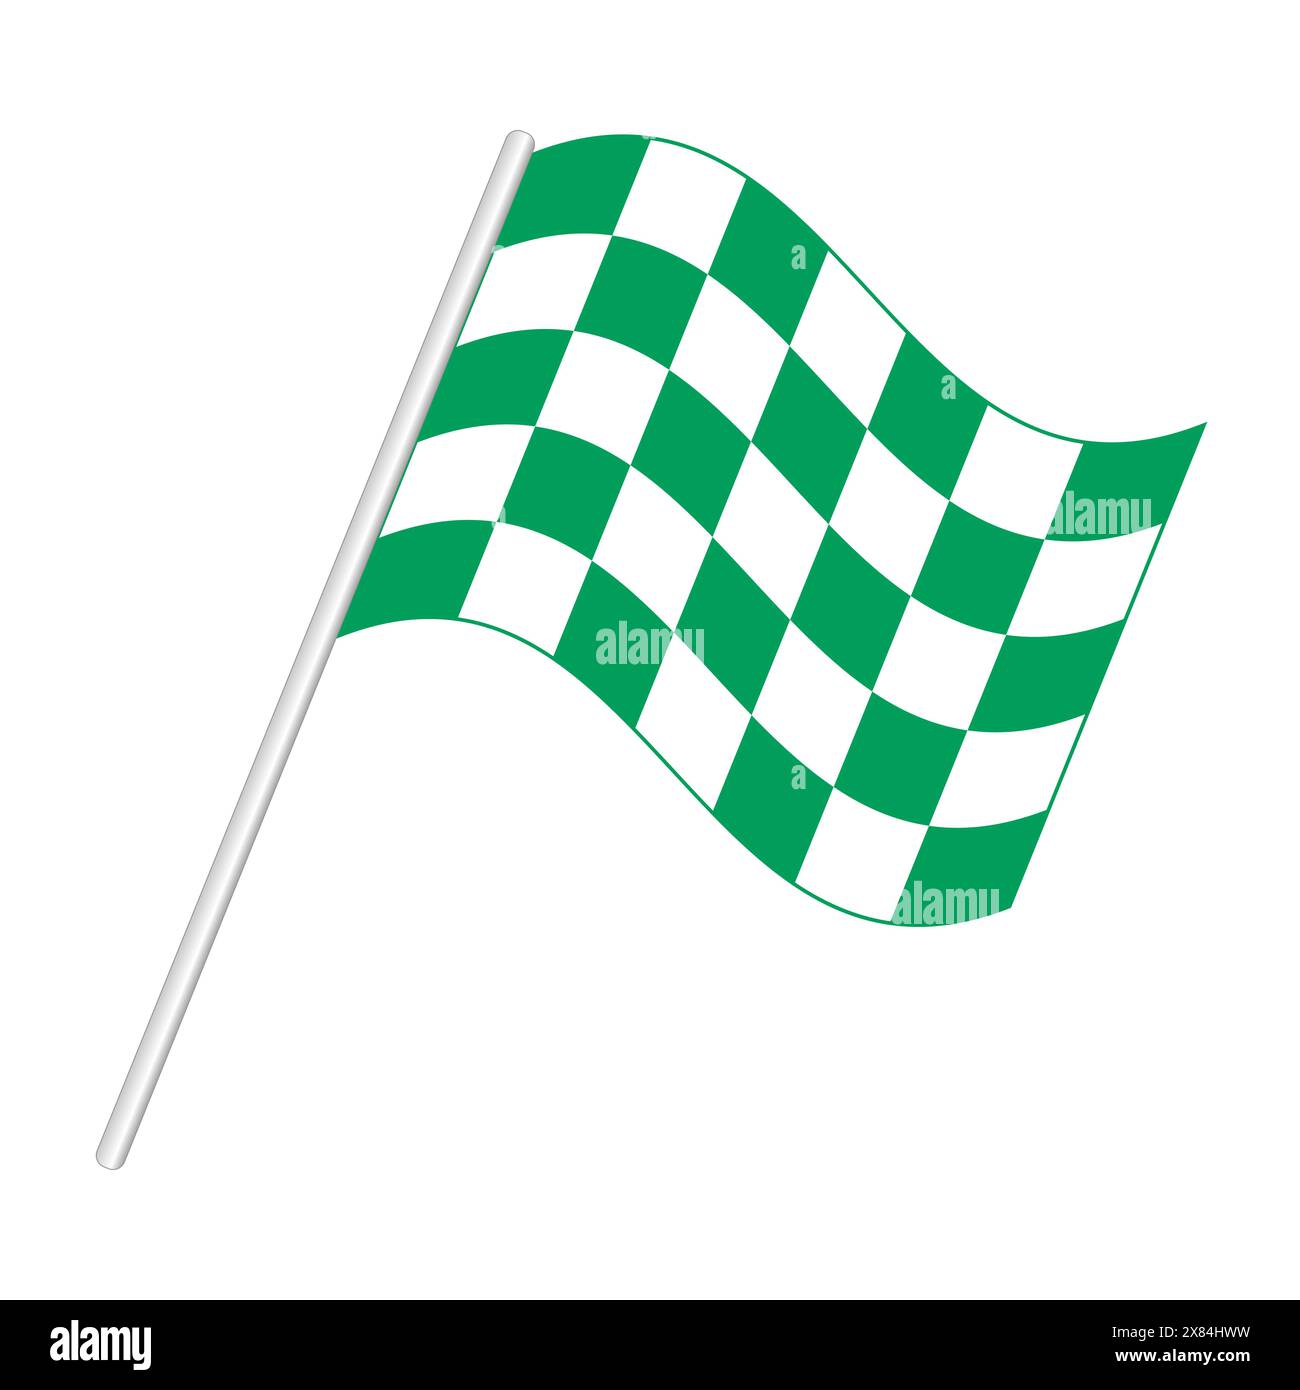 Grün-weiß karierte Rennfahne. Spezielle Version der Flagge zum Ende der Session bei bestimmten Rennen, die an der Ziellinie angezeigt und als Preis verwendet wird. Stockfoto